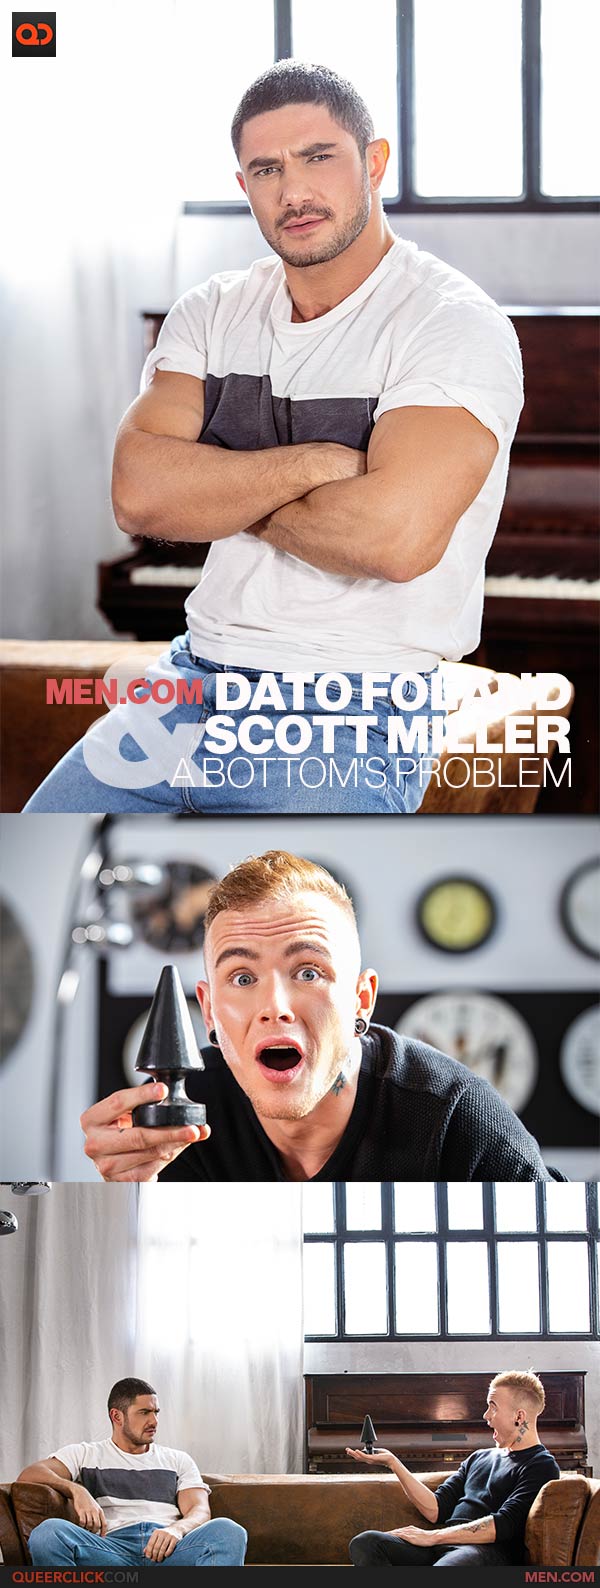 Men.com: Dato Foland and Scott Miller